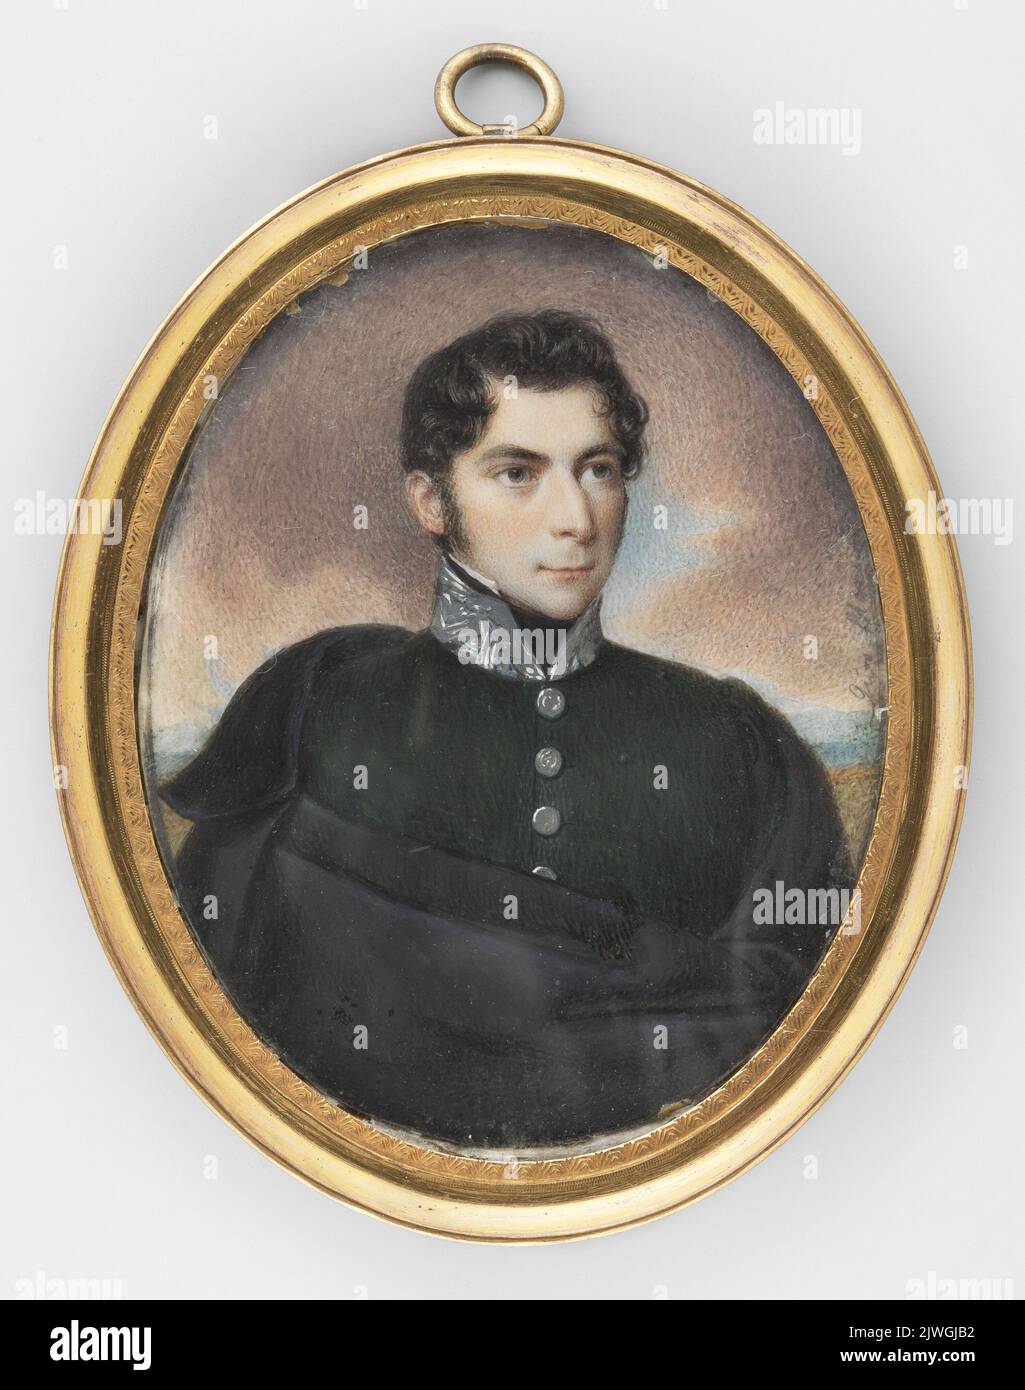 Portret mężczyzny. Mansco, Giovanni (fl. 1800-1840), painter Stock Photo